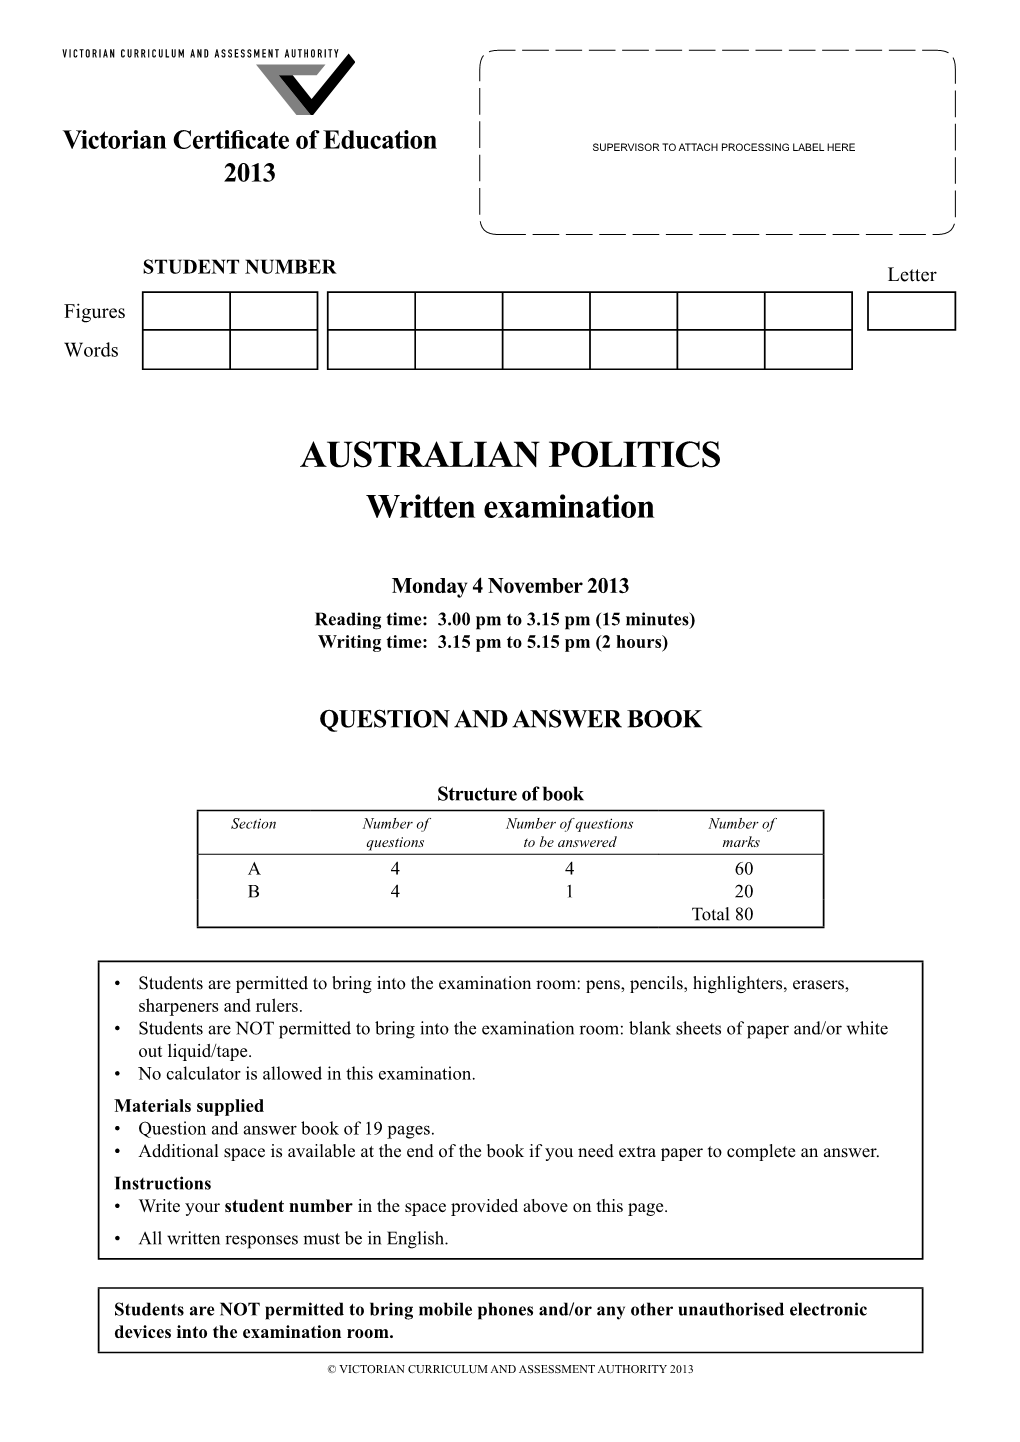 2013 Australian Politics Written Examination